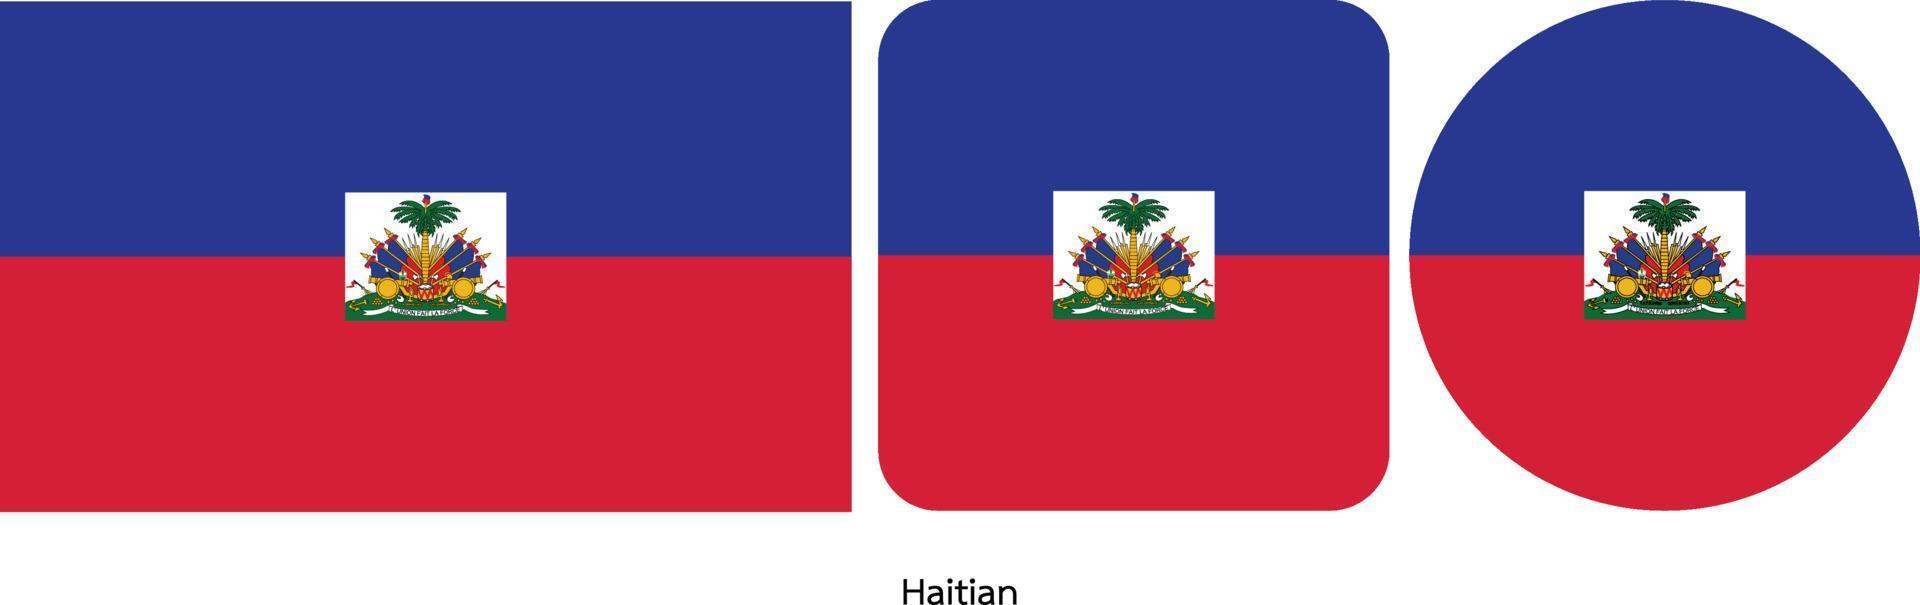 bandiera haitiana, illustrazione vettoriale